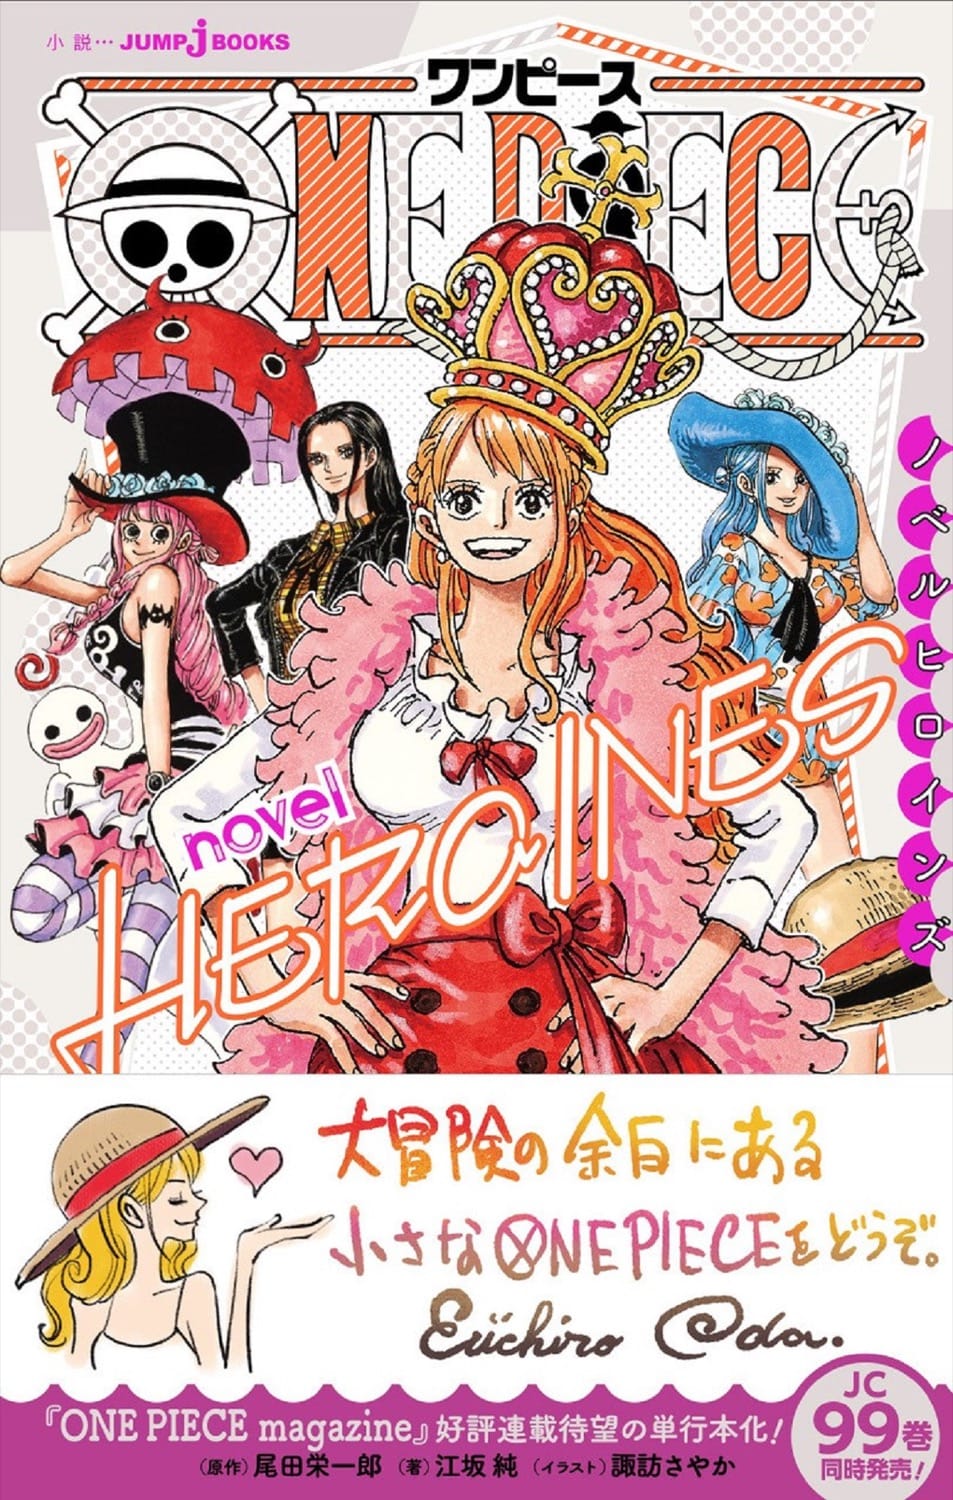 短編小説集 「ONE PIECE novel HEROINES」2021年6月4日発売!